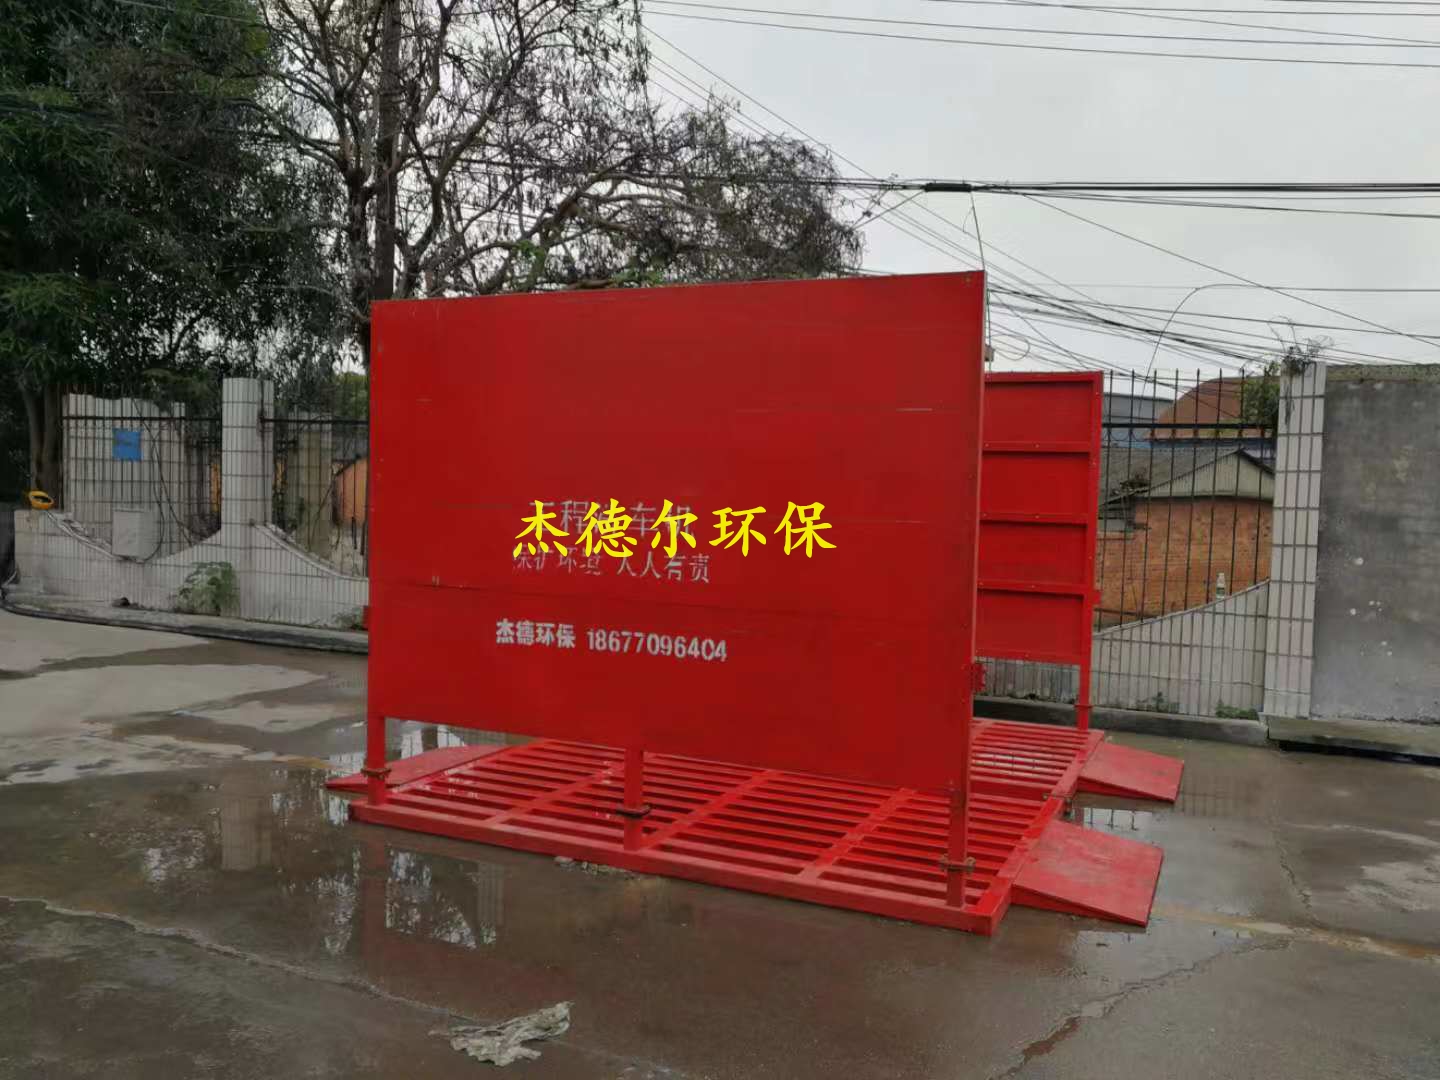 贵港市港南建筑工地自动洗车槽-新型无人值守高效环保设备